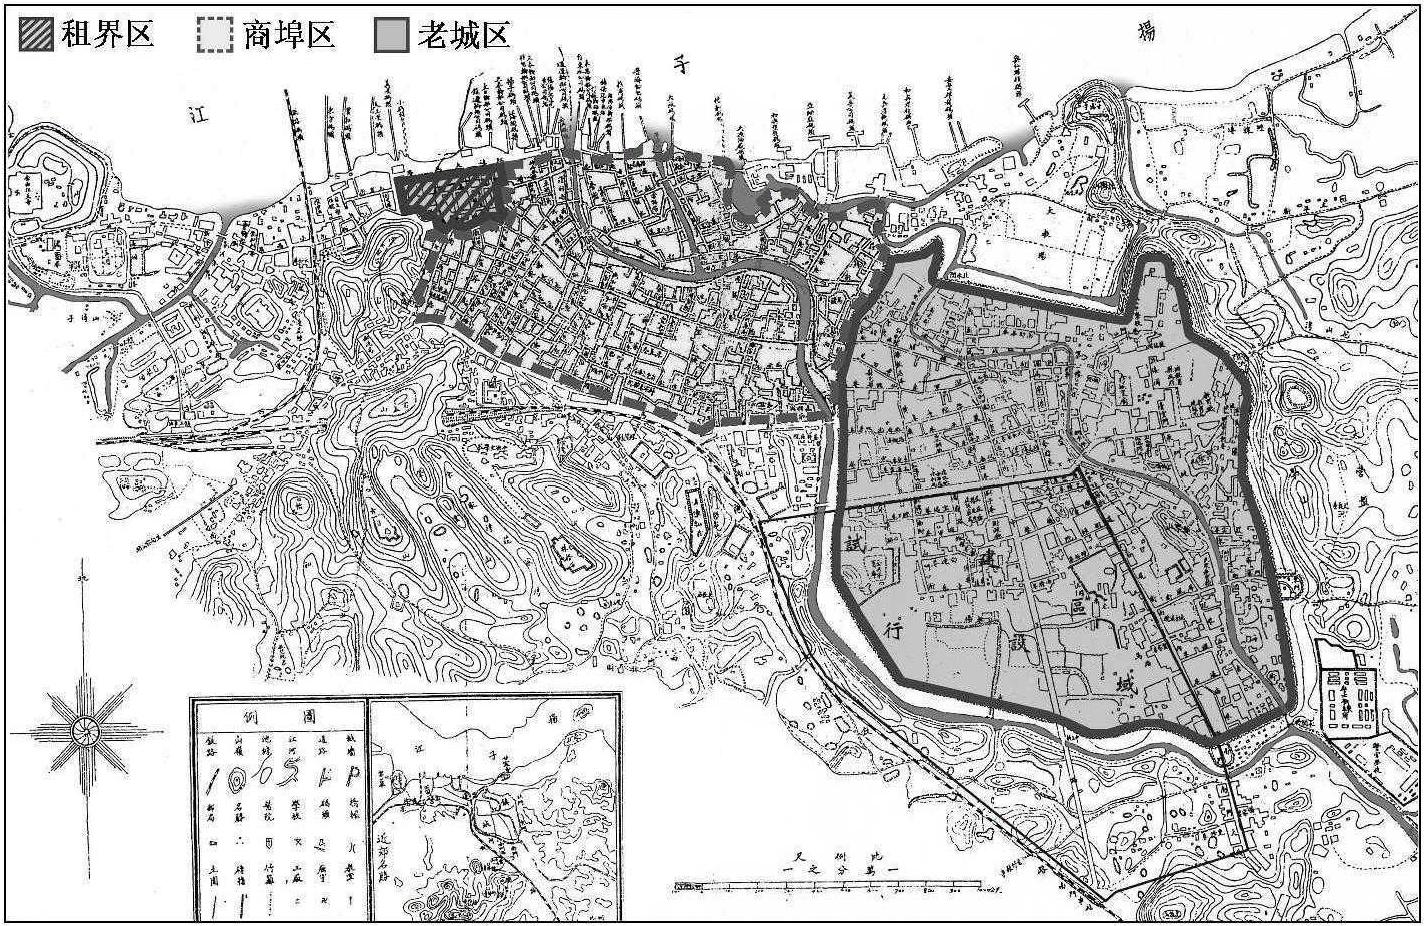 1.2.1 长江时代——兴起阶段(1861年至20世纪初)